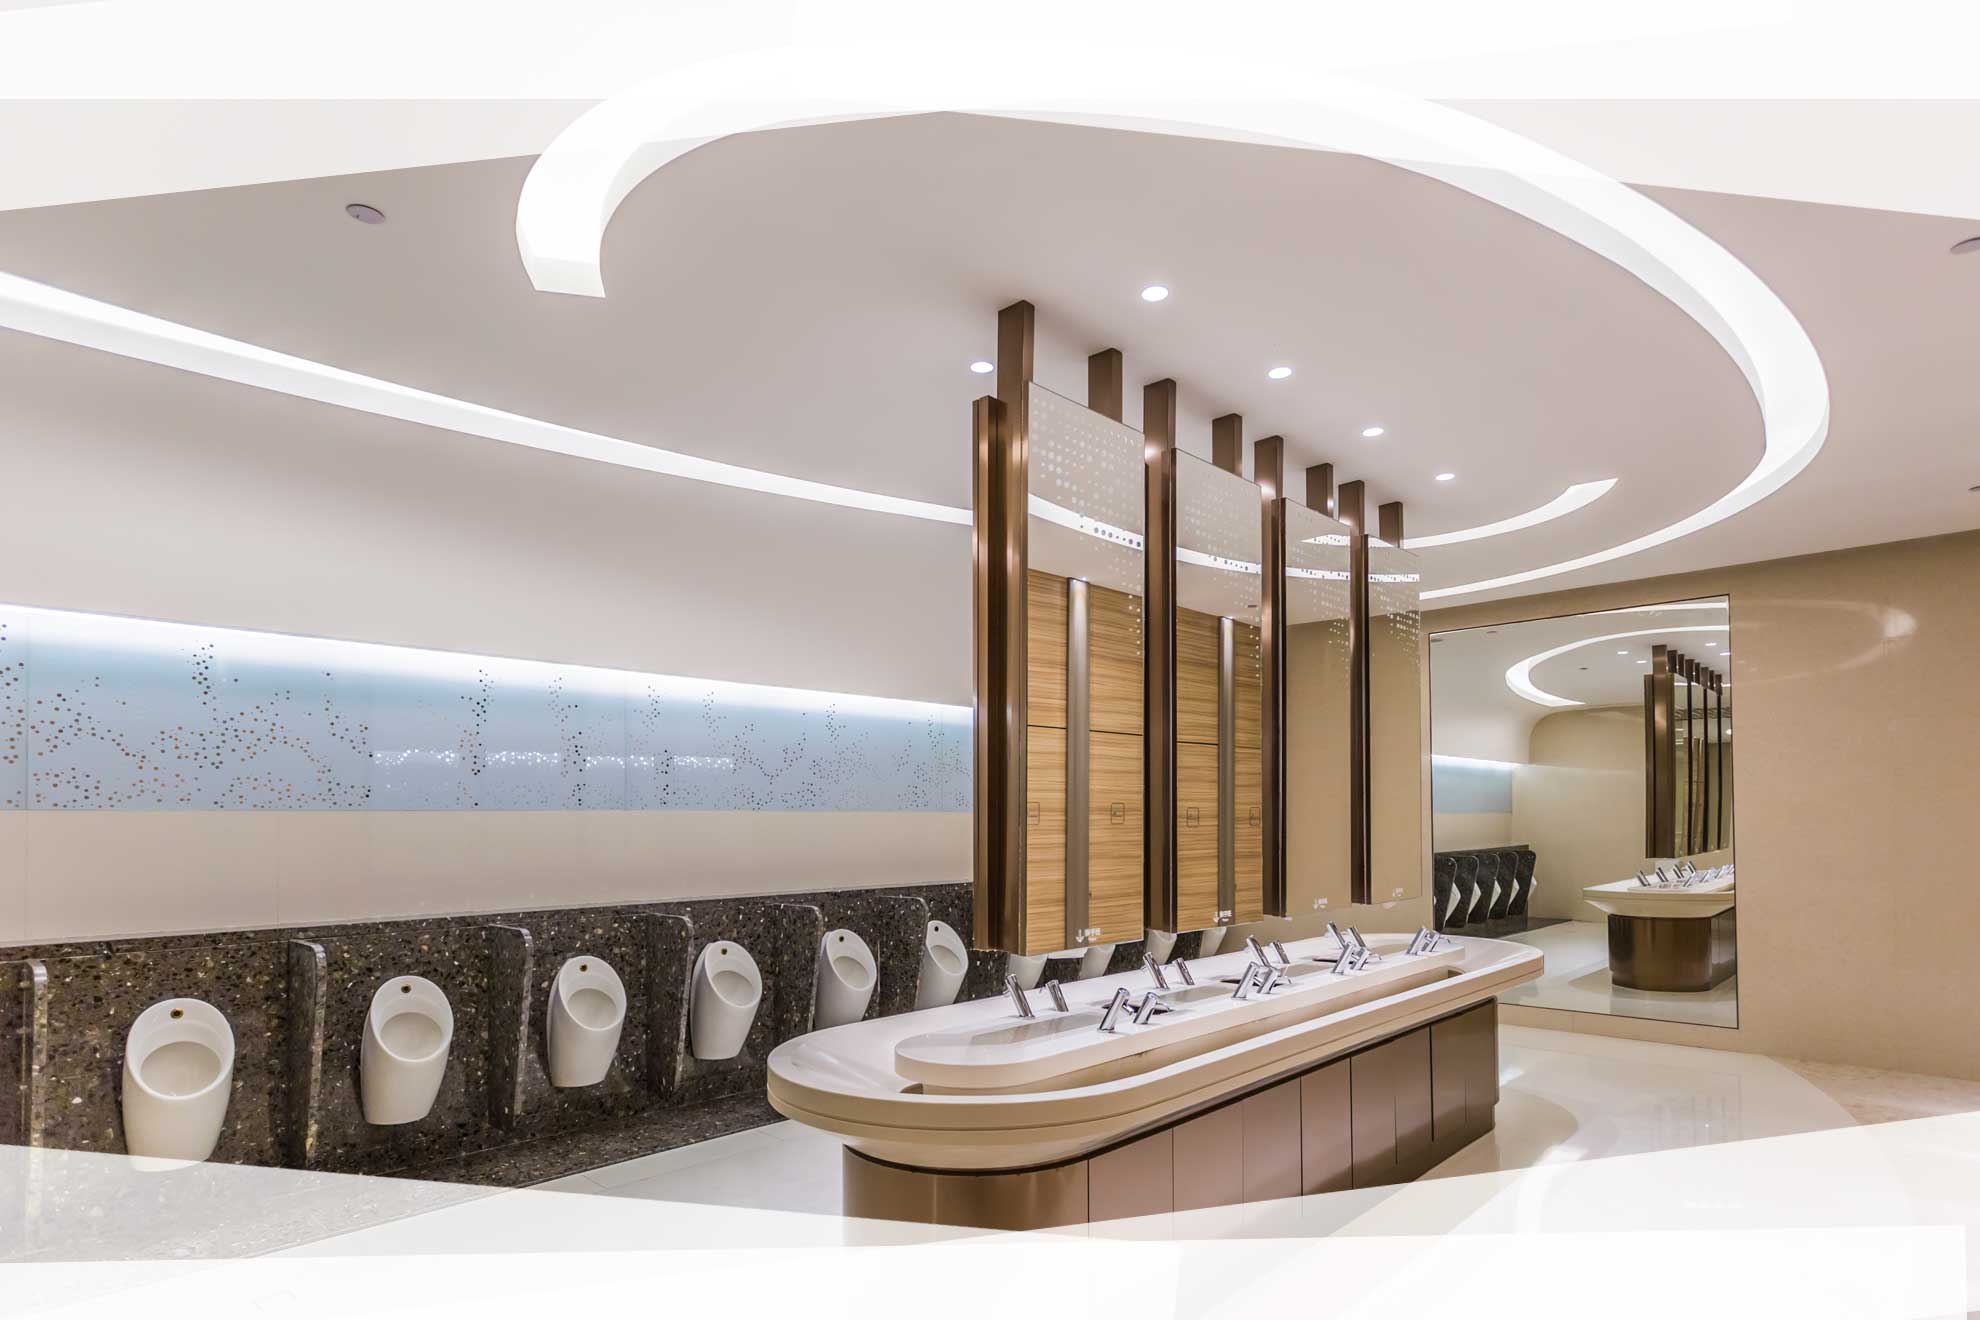 Instalaciones de fontanería para industrias y empresas en Bilbao Vizcaya